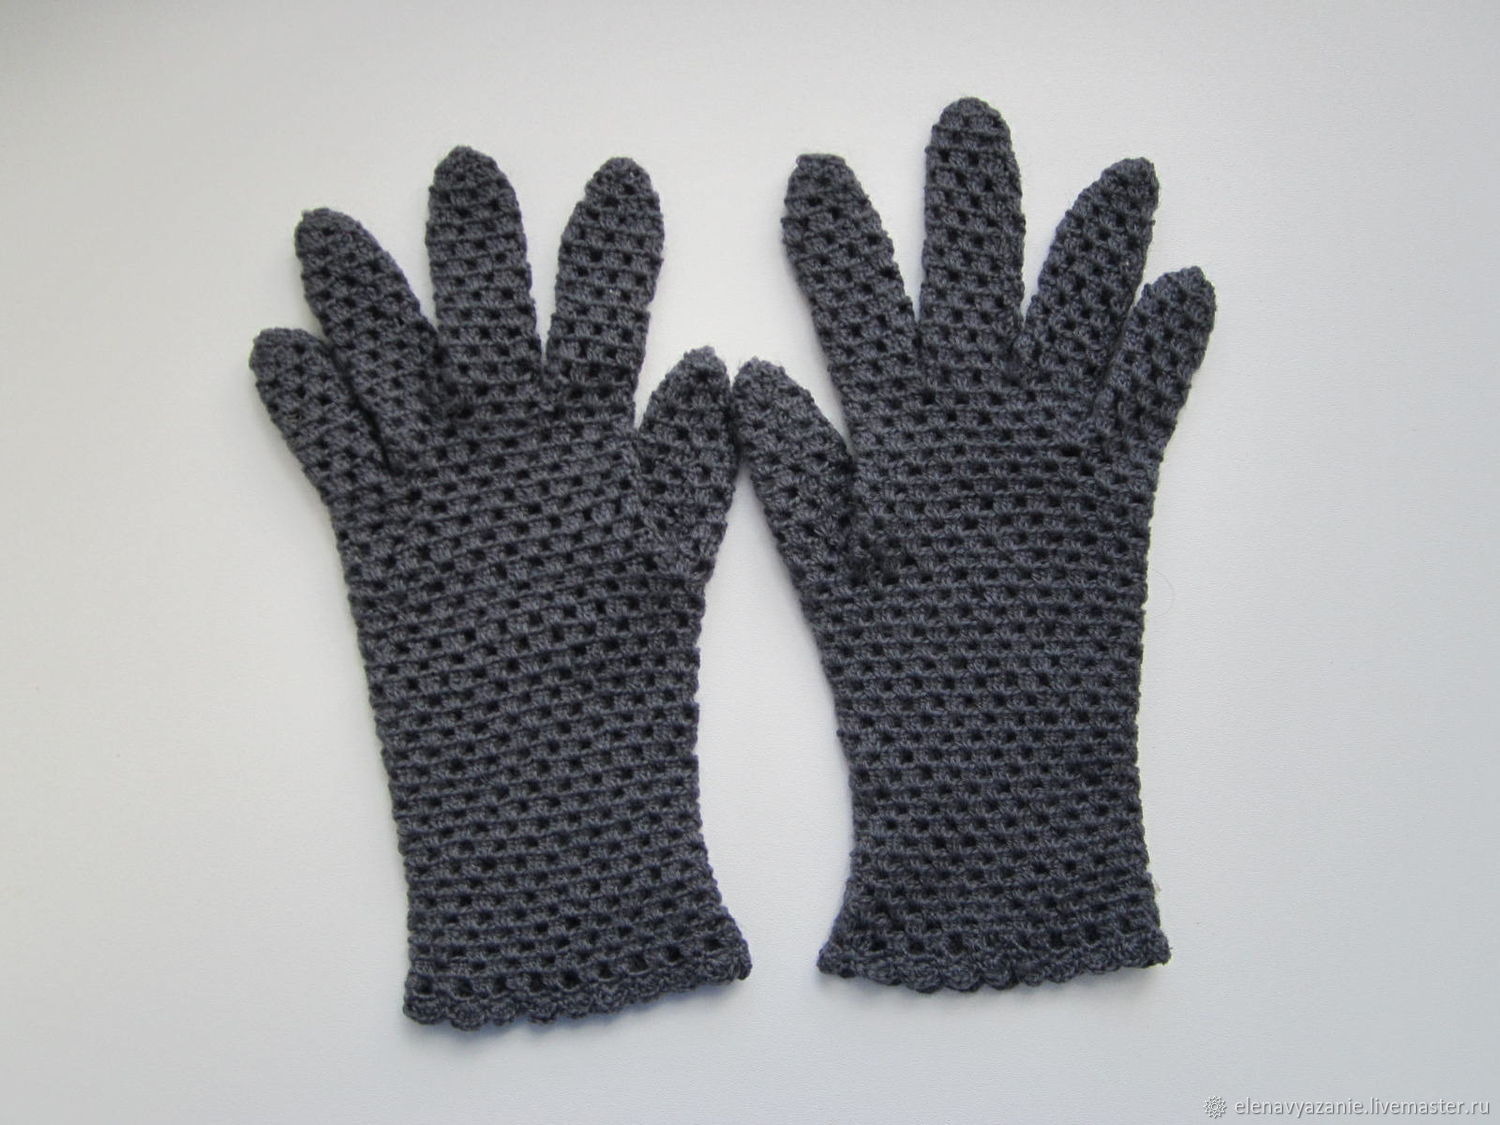 Ажурные перчатки , цвет серый